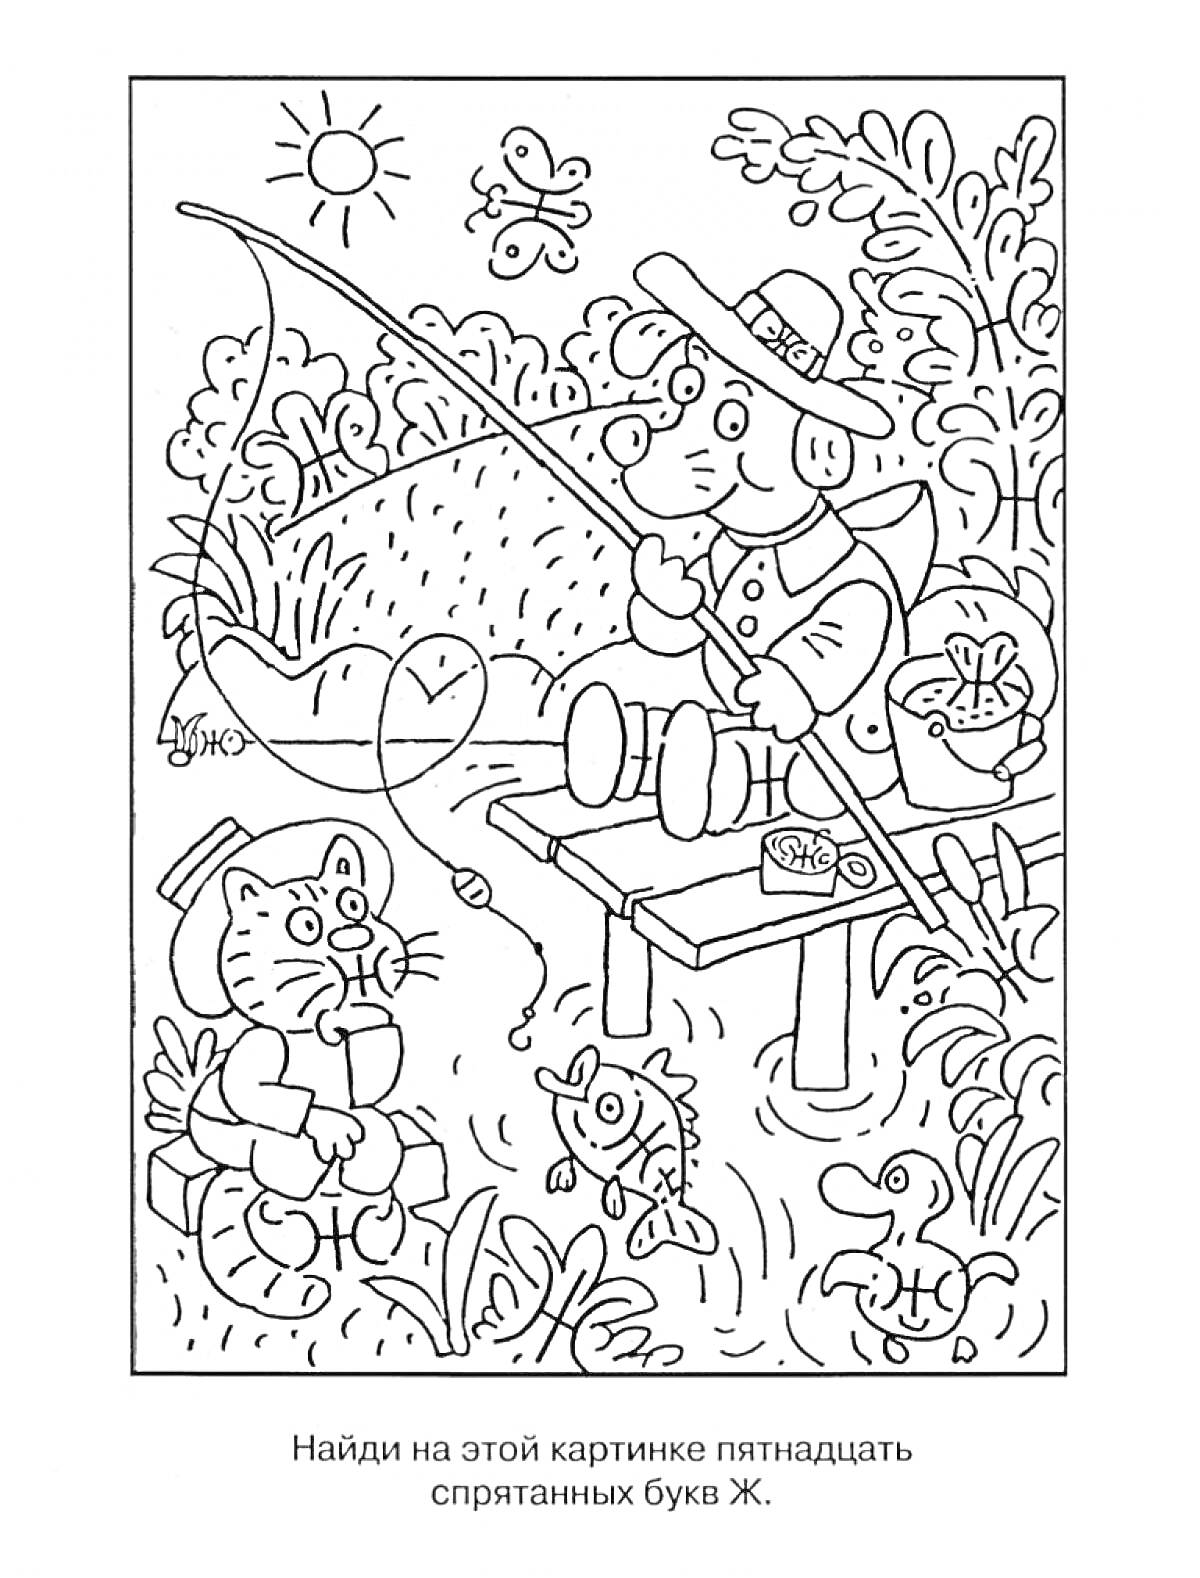 Раскраска Рыбалка - человек на причале с удочкой, кот с ведерком на берегу, рыбки в воде, кусты, цветы, солнце, небо, трава.